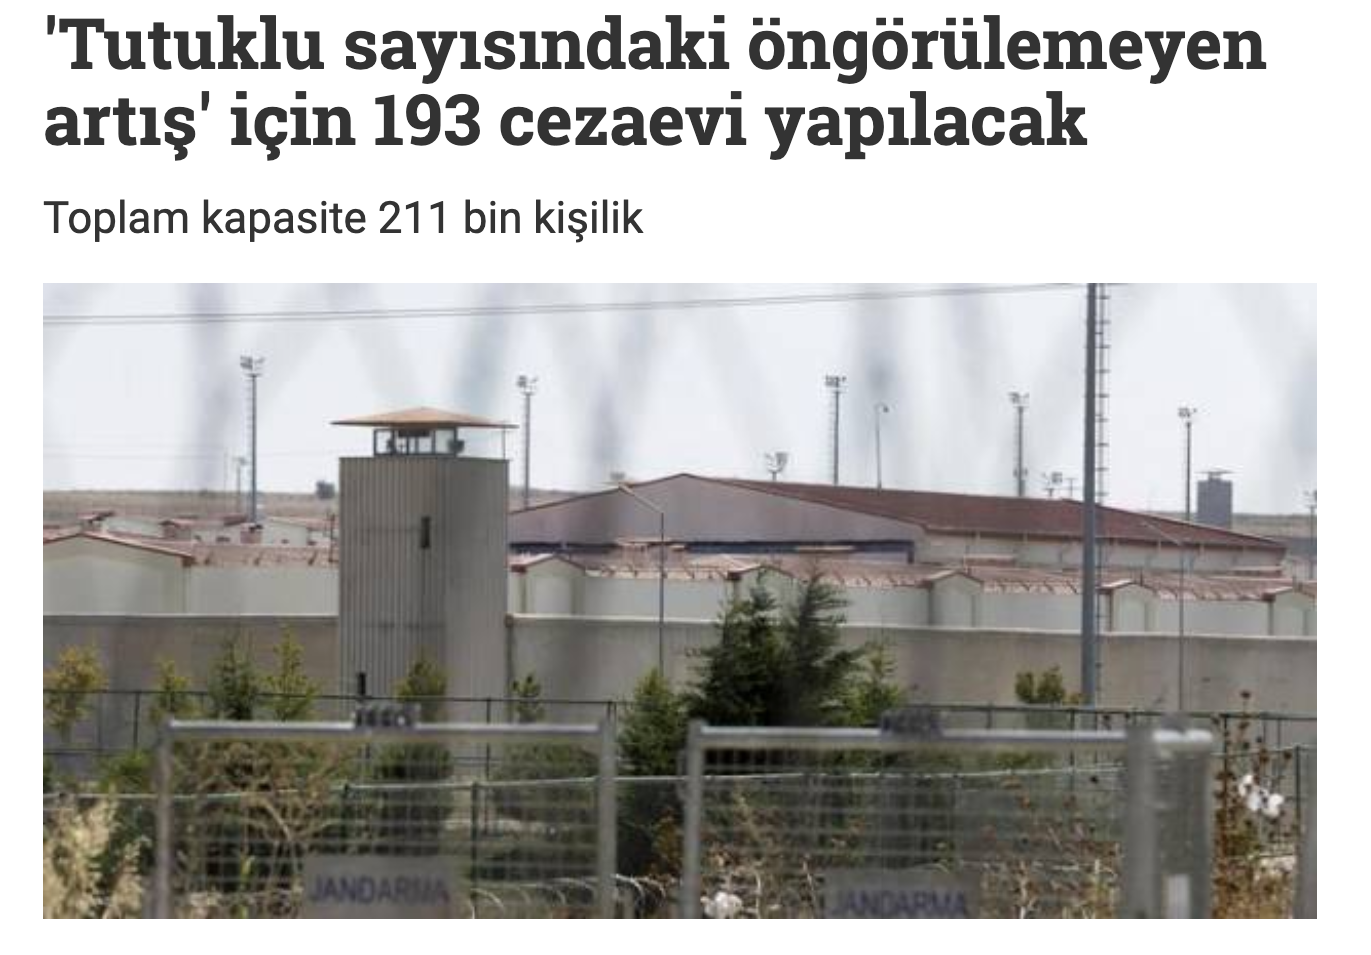 AKP Mujdeledi! Yeni Cezaevleri Geliyor